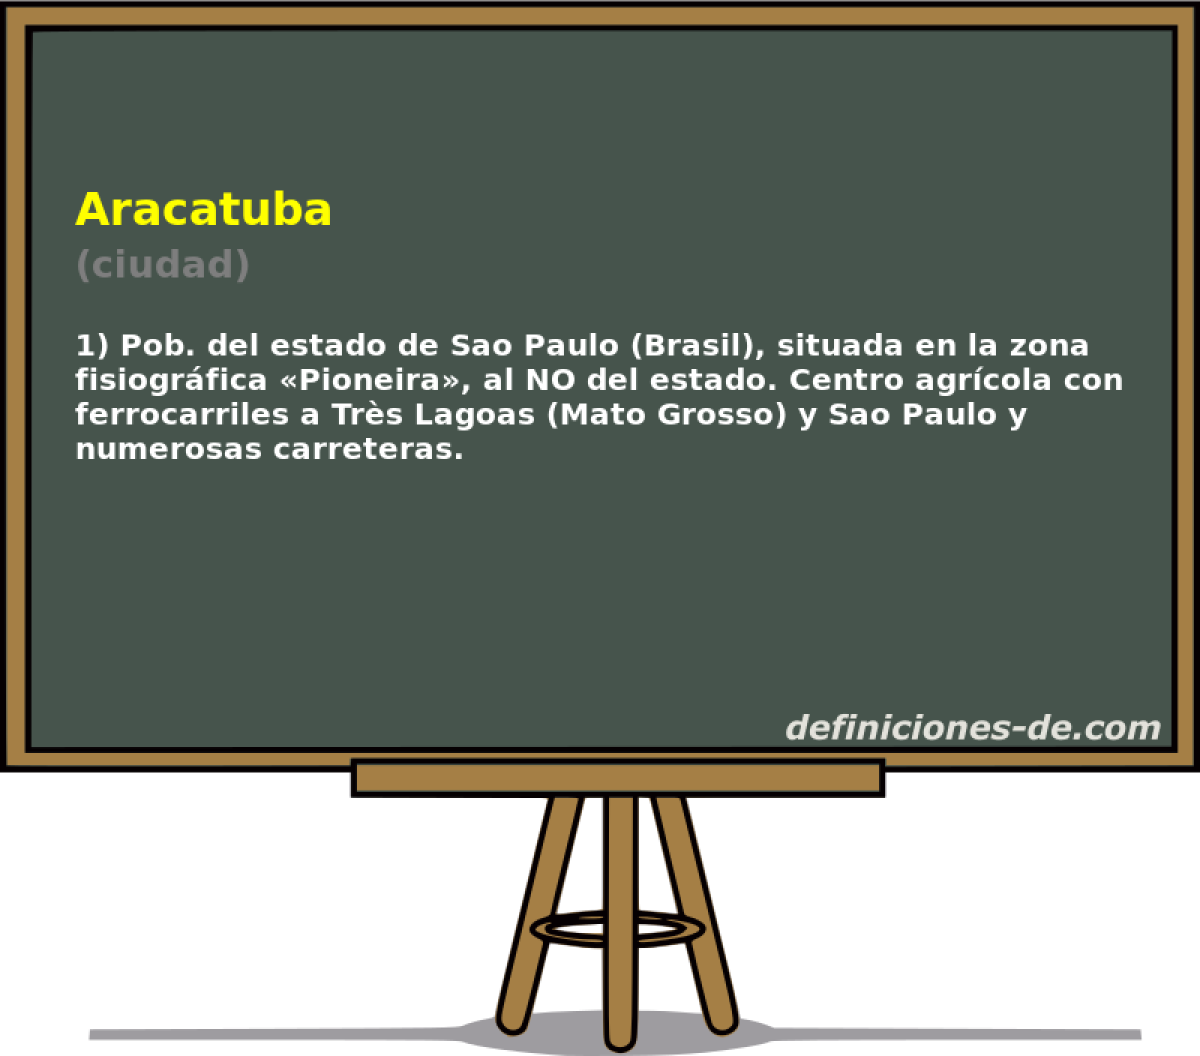 Aracatuba (ciudad)